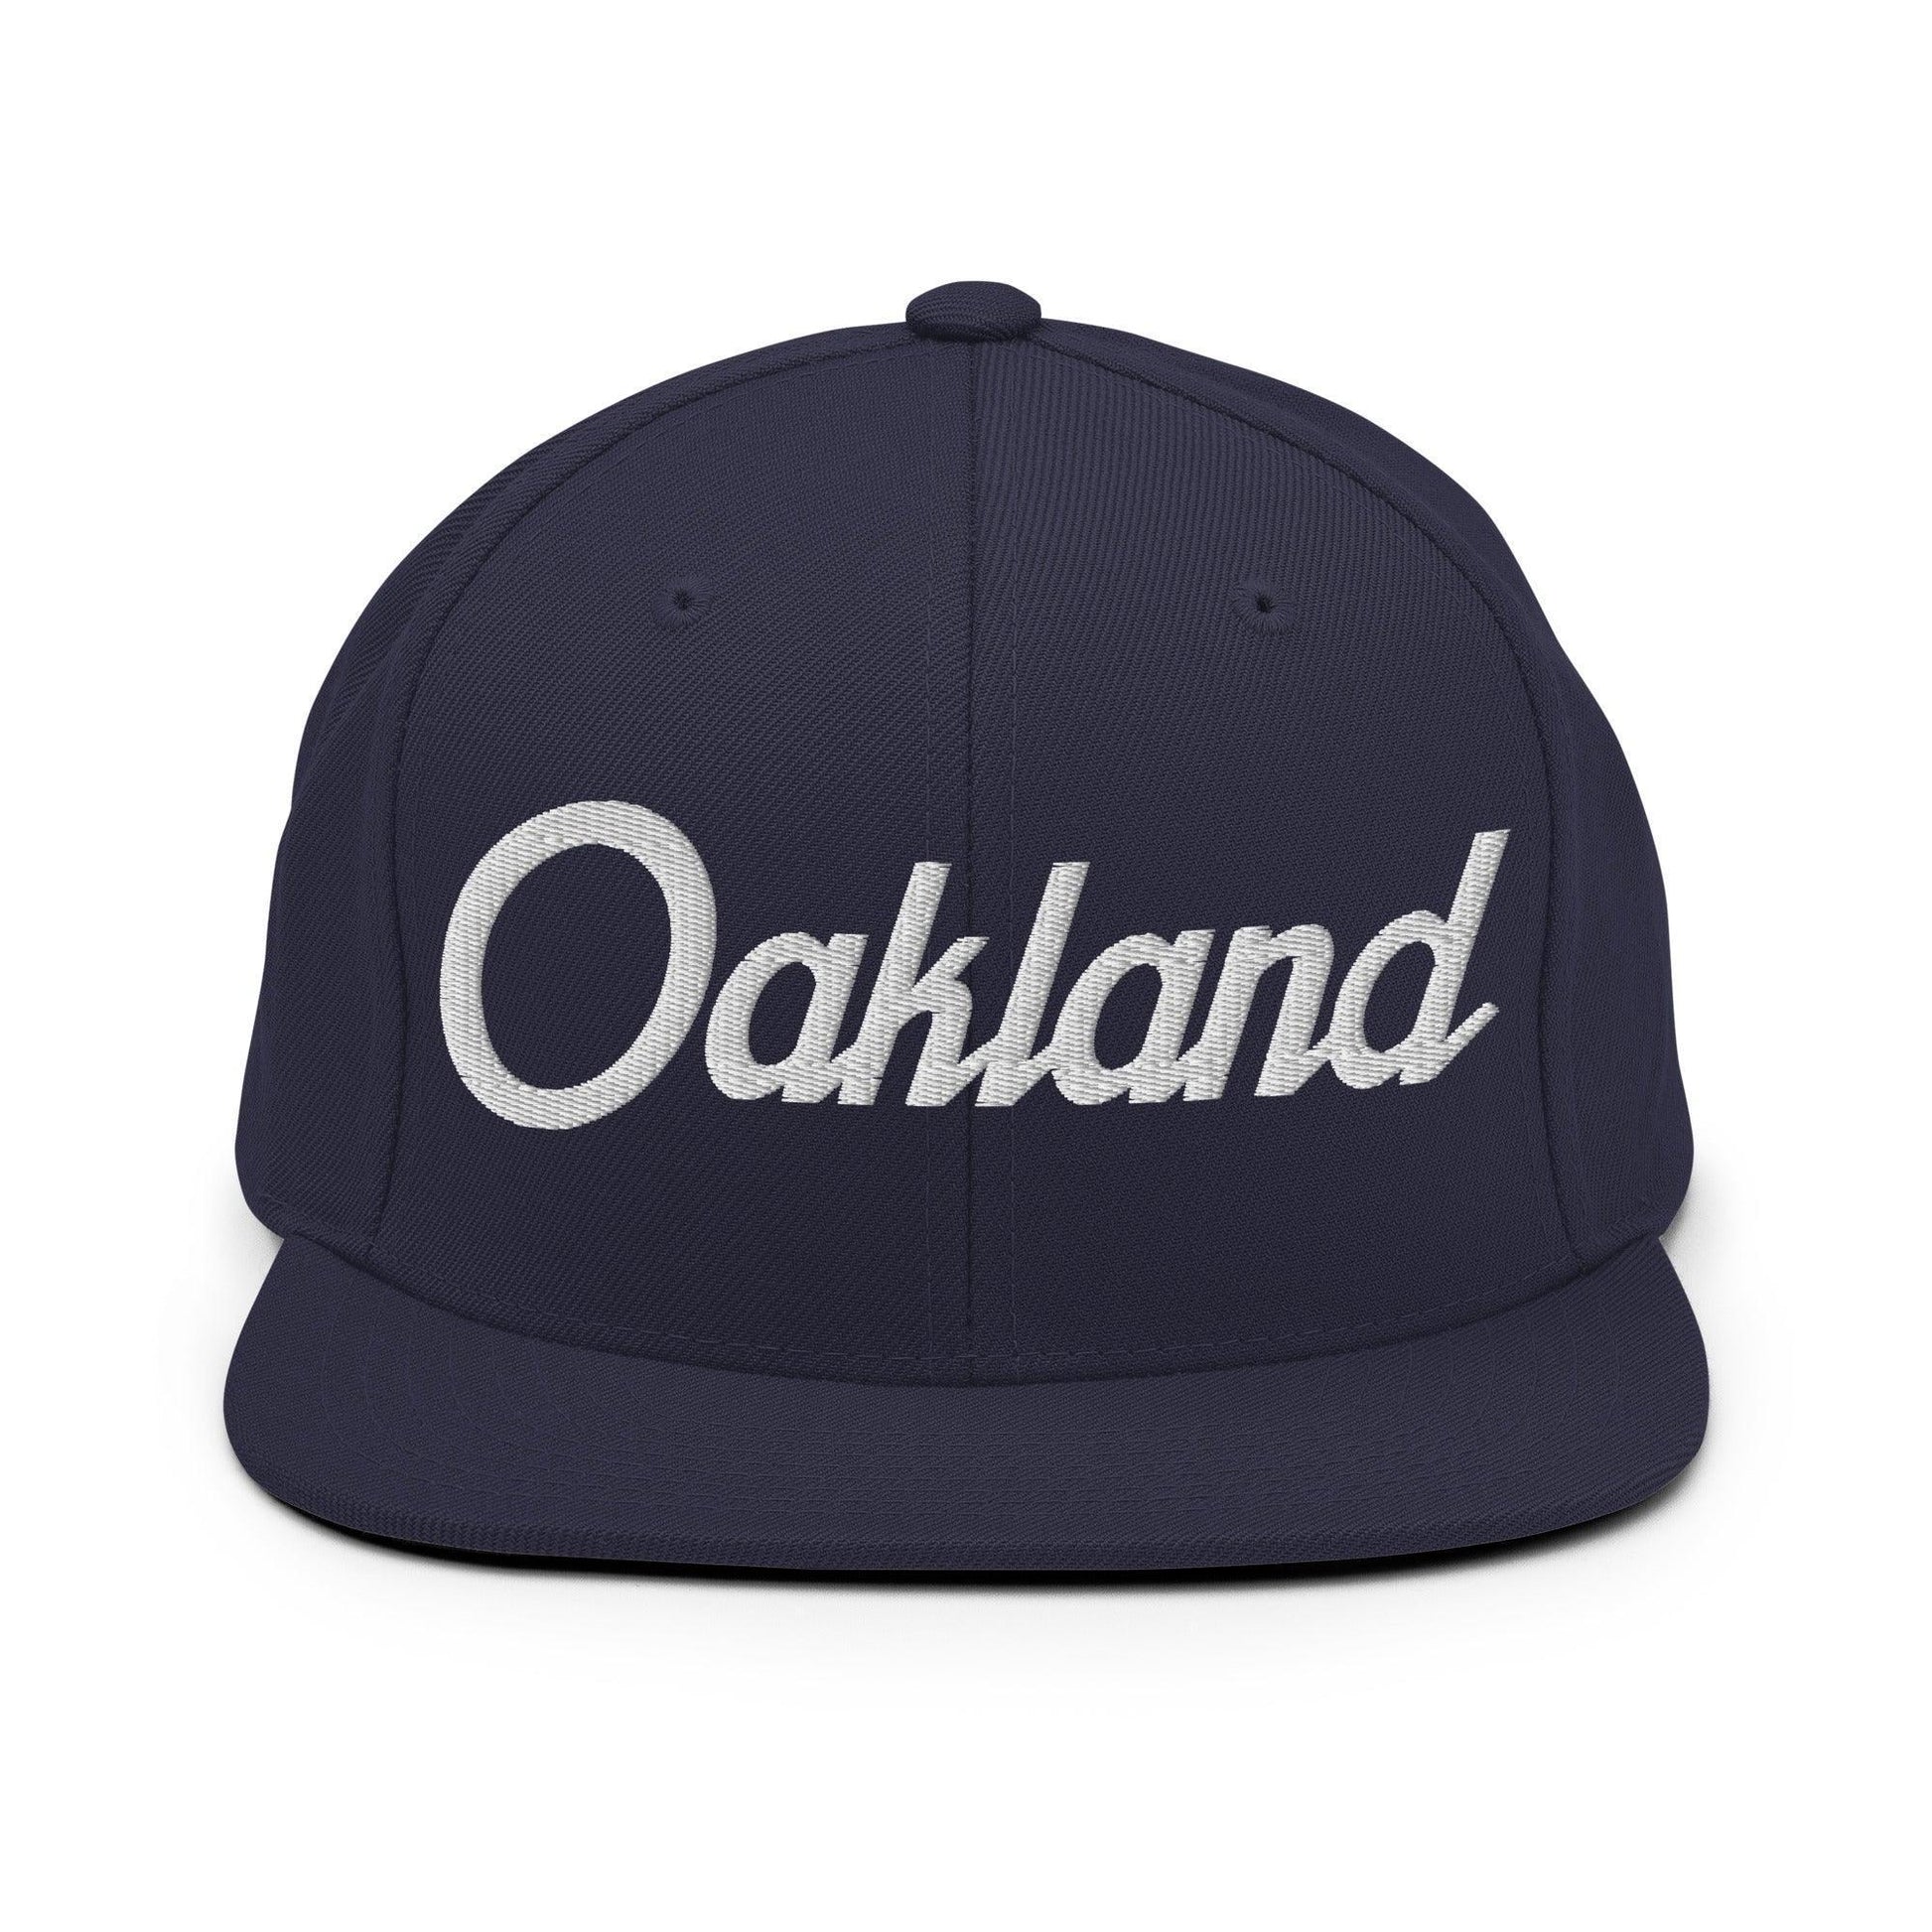 Oakland Script Snapback Hat Navy